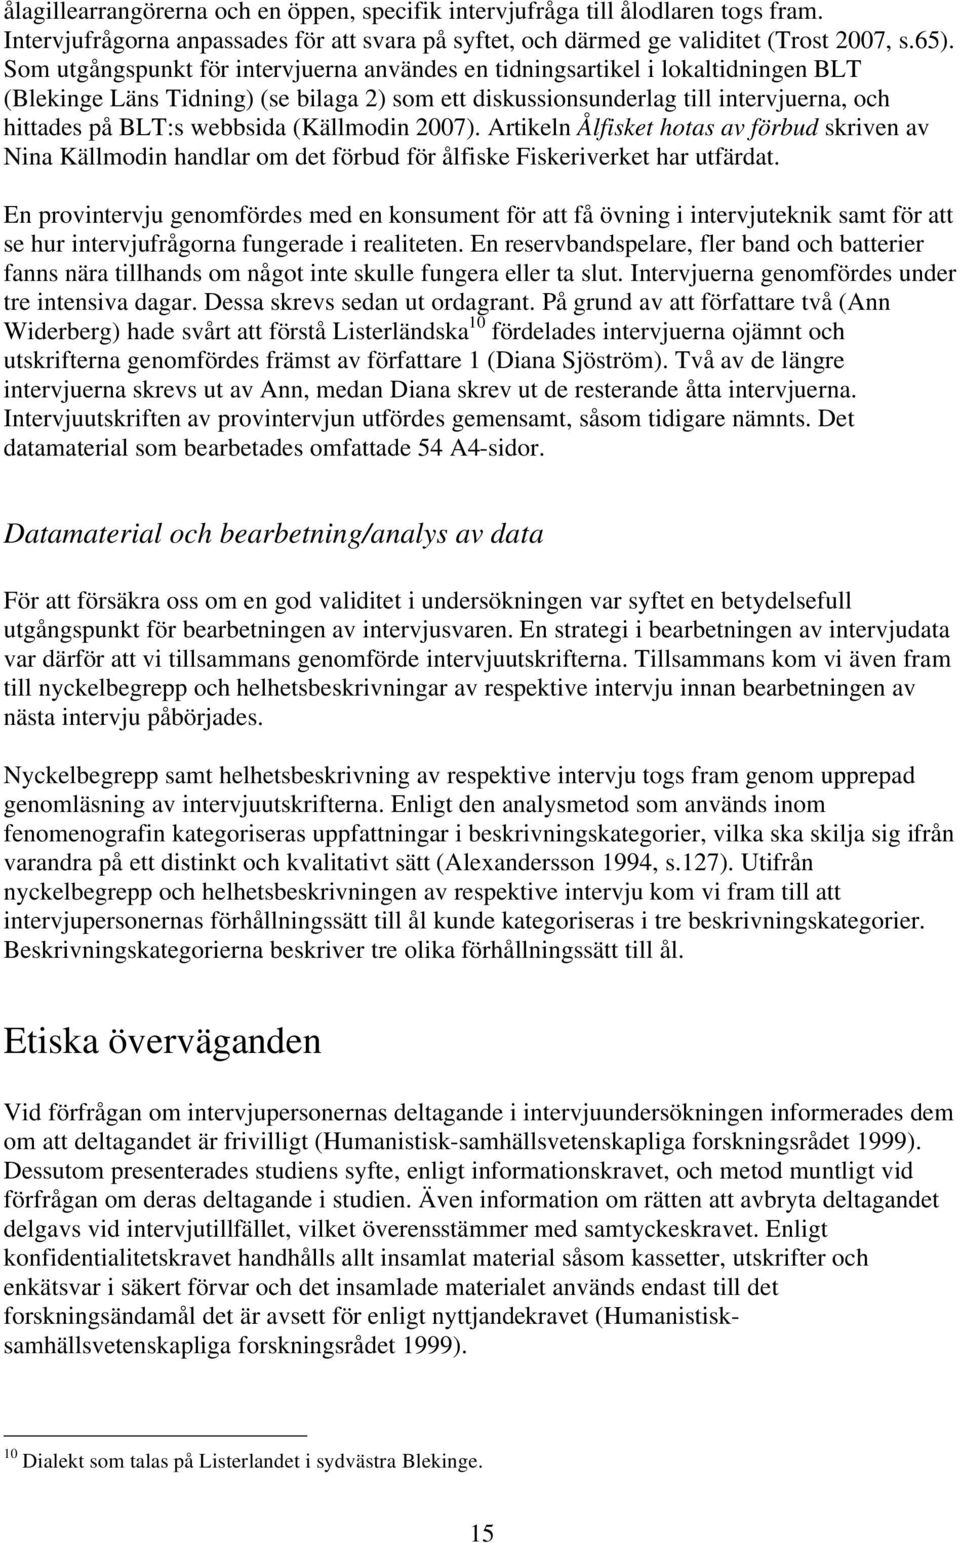 (Källmodin 2007). Artikeln Ålfisket hotas av förbud skriven av Nina Källmodin handlar om det förbud för ålfiske Fiskeriverket har utfärdat.